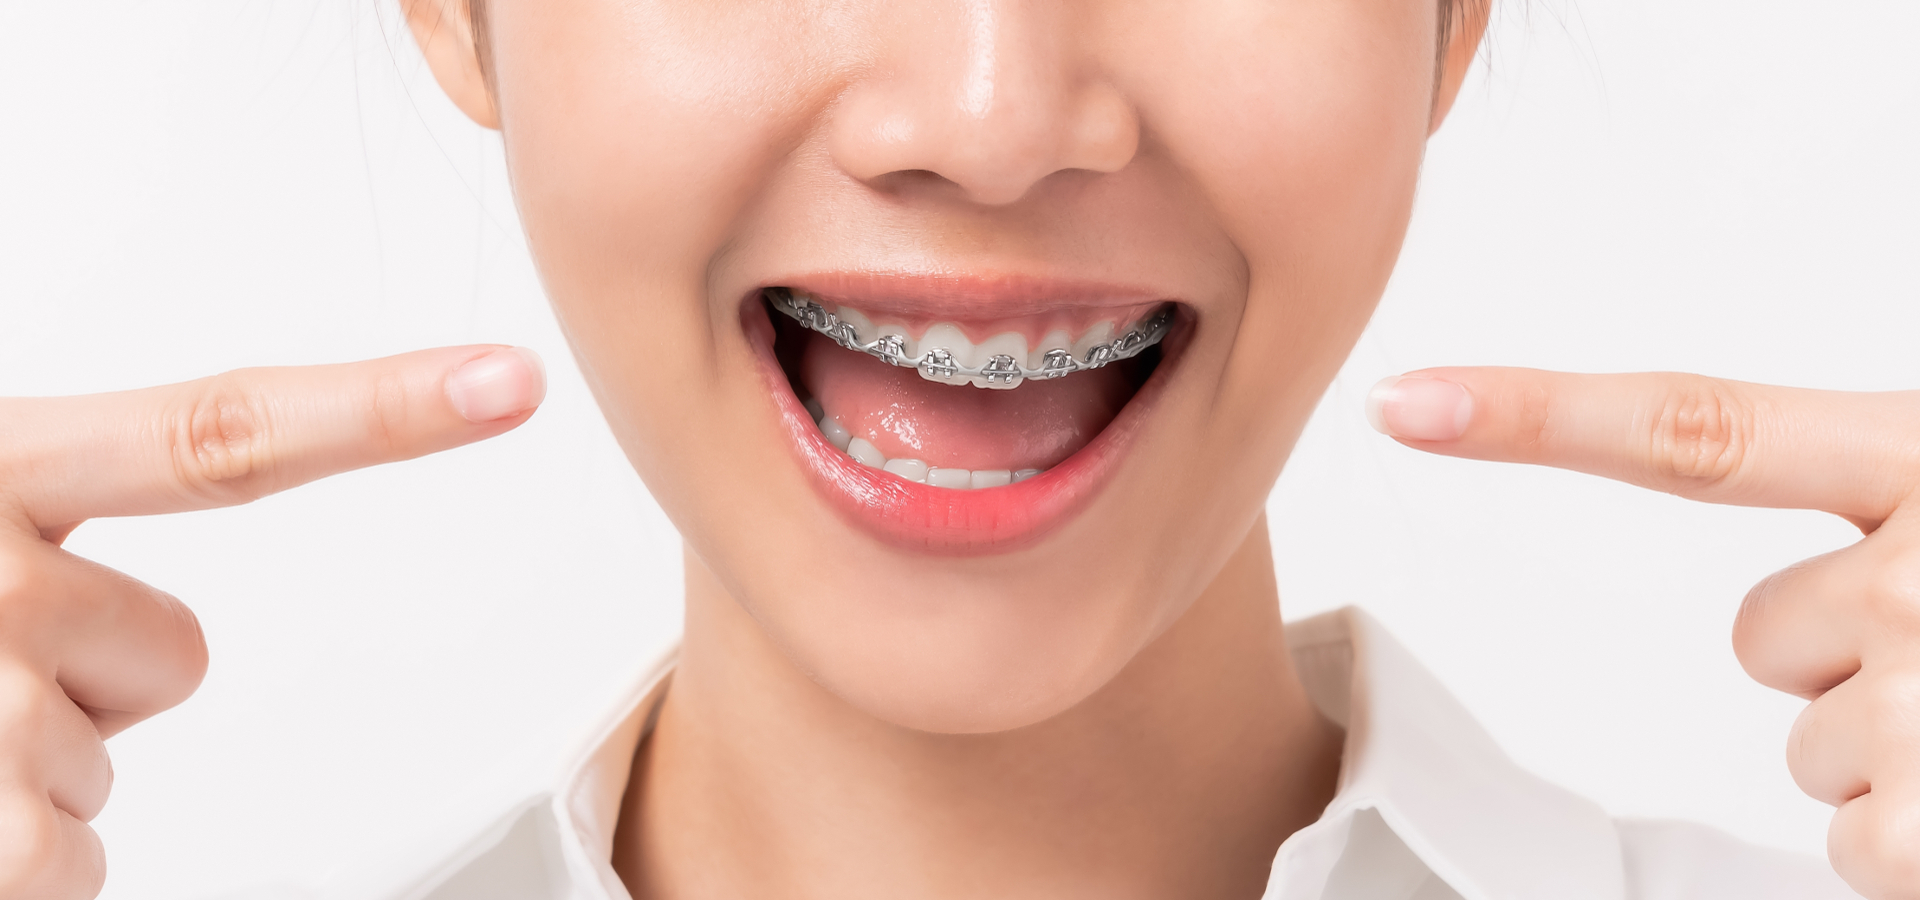 Clínica Dental Uradent tratamiento de ortodoncia metálica y estética